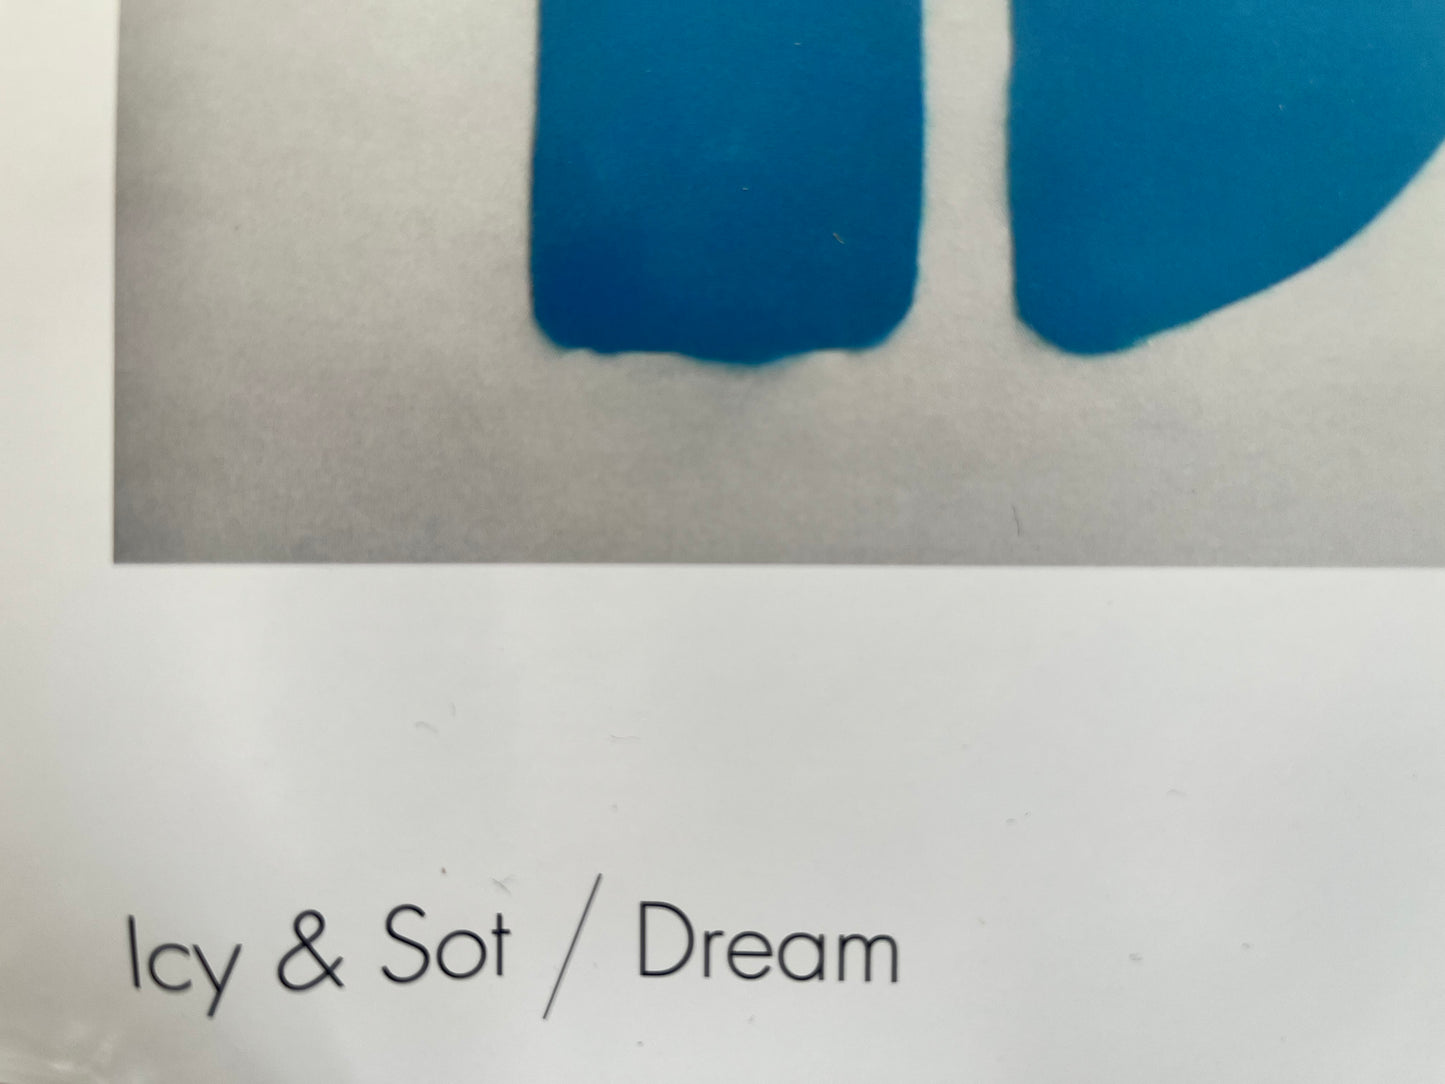 Sérigraphie Offset - Icy & Sot x MocoMuseum - Dream